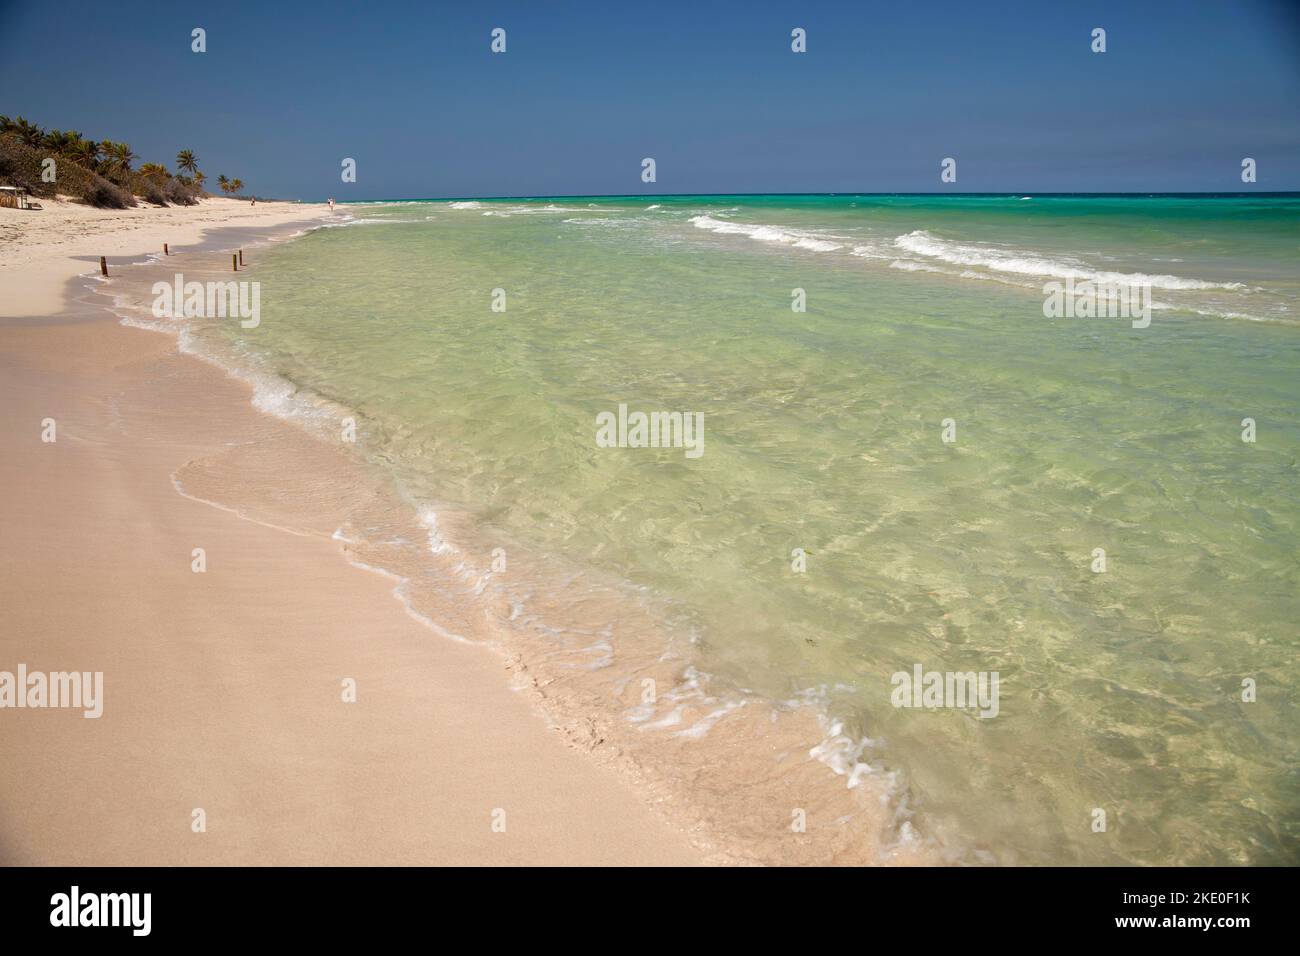 Strand bei Santa María del Mar, Playas del este, Havanna, Kuba, Karibik  | Beach near Santa María del Mar, Playas del este,  Havana, Cuba, Carribean Stock Photo